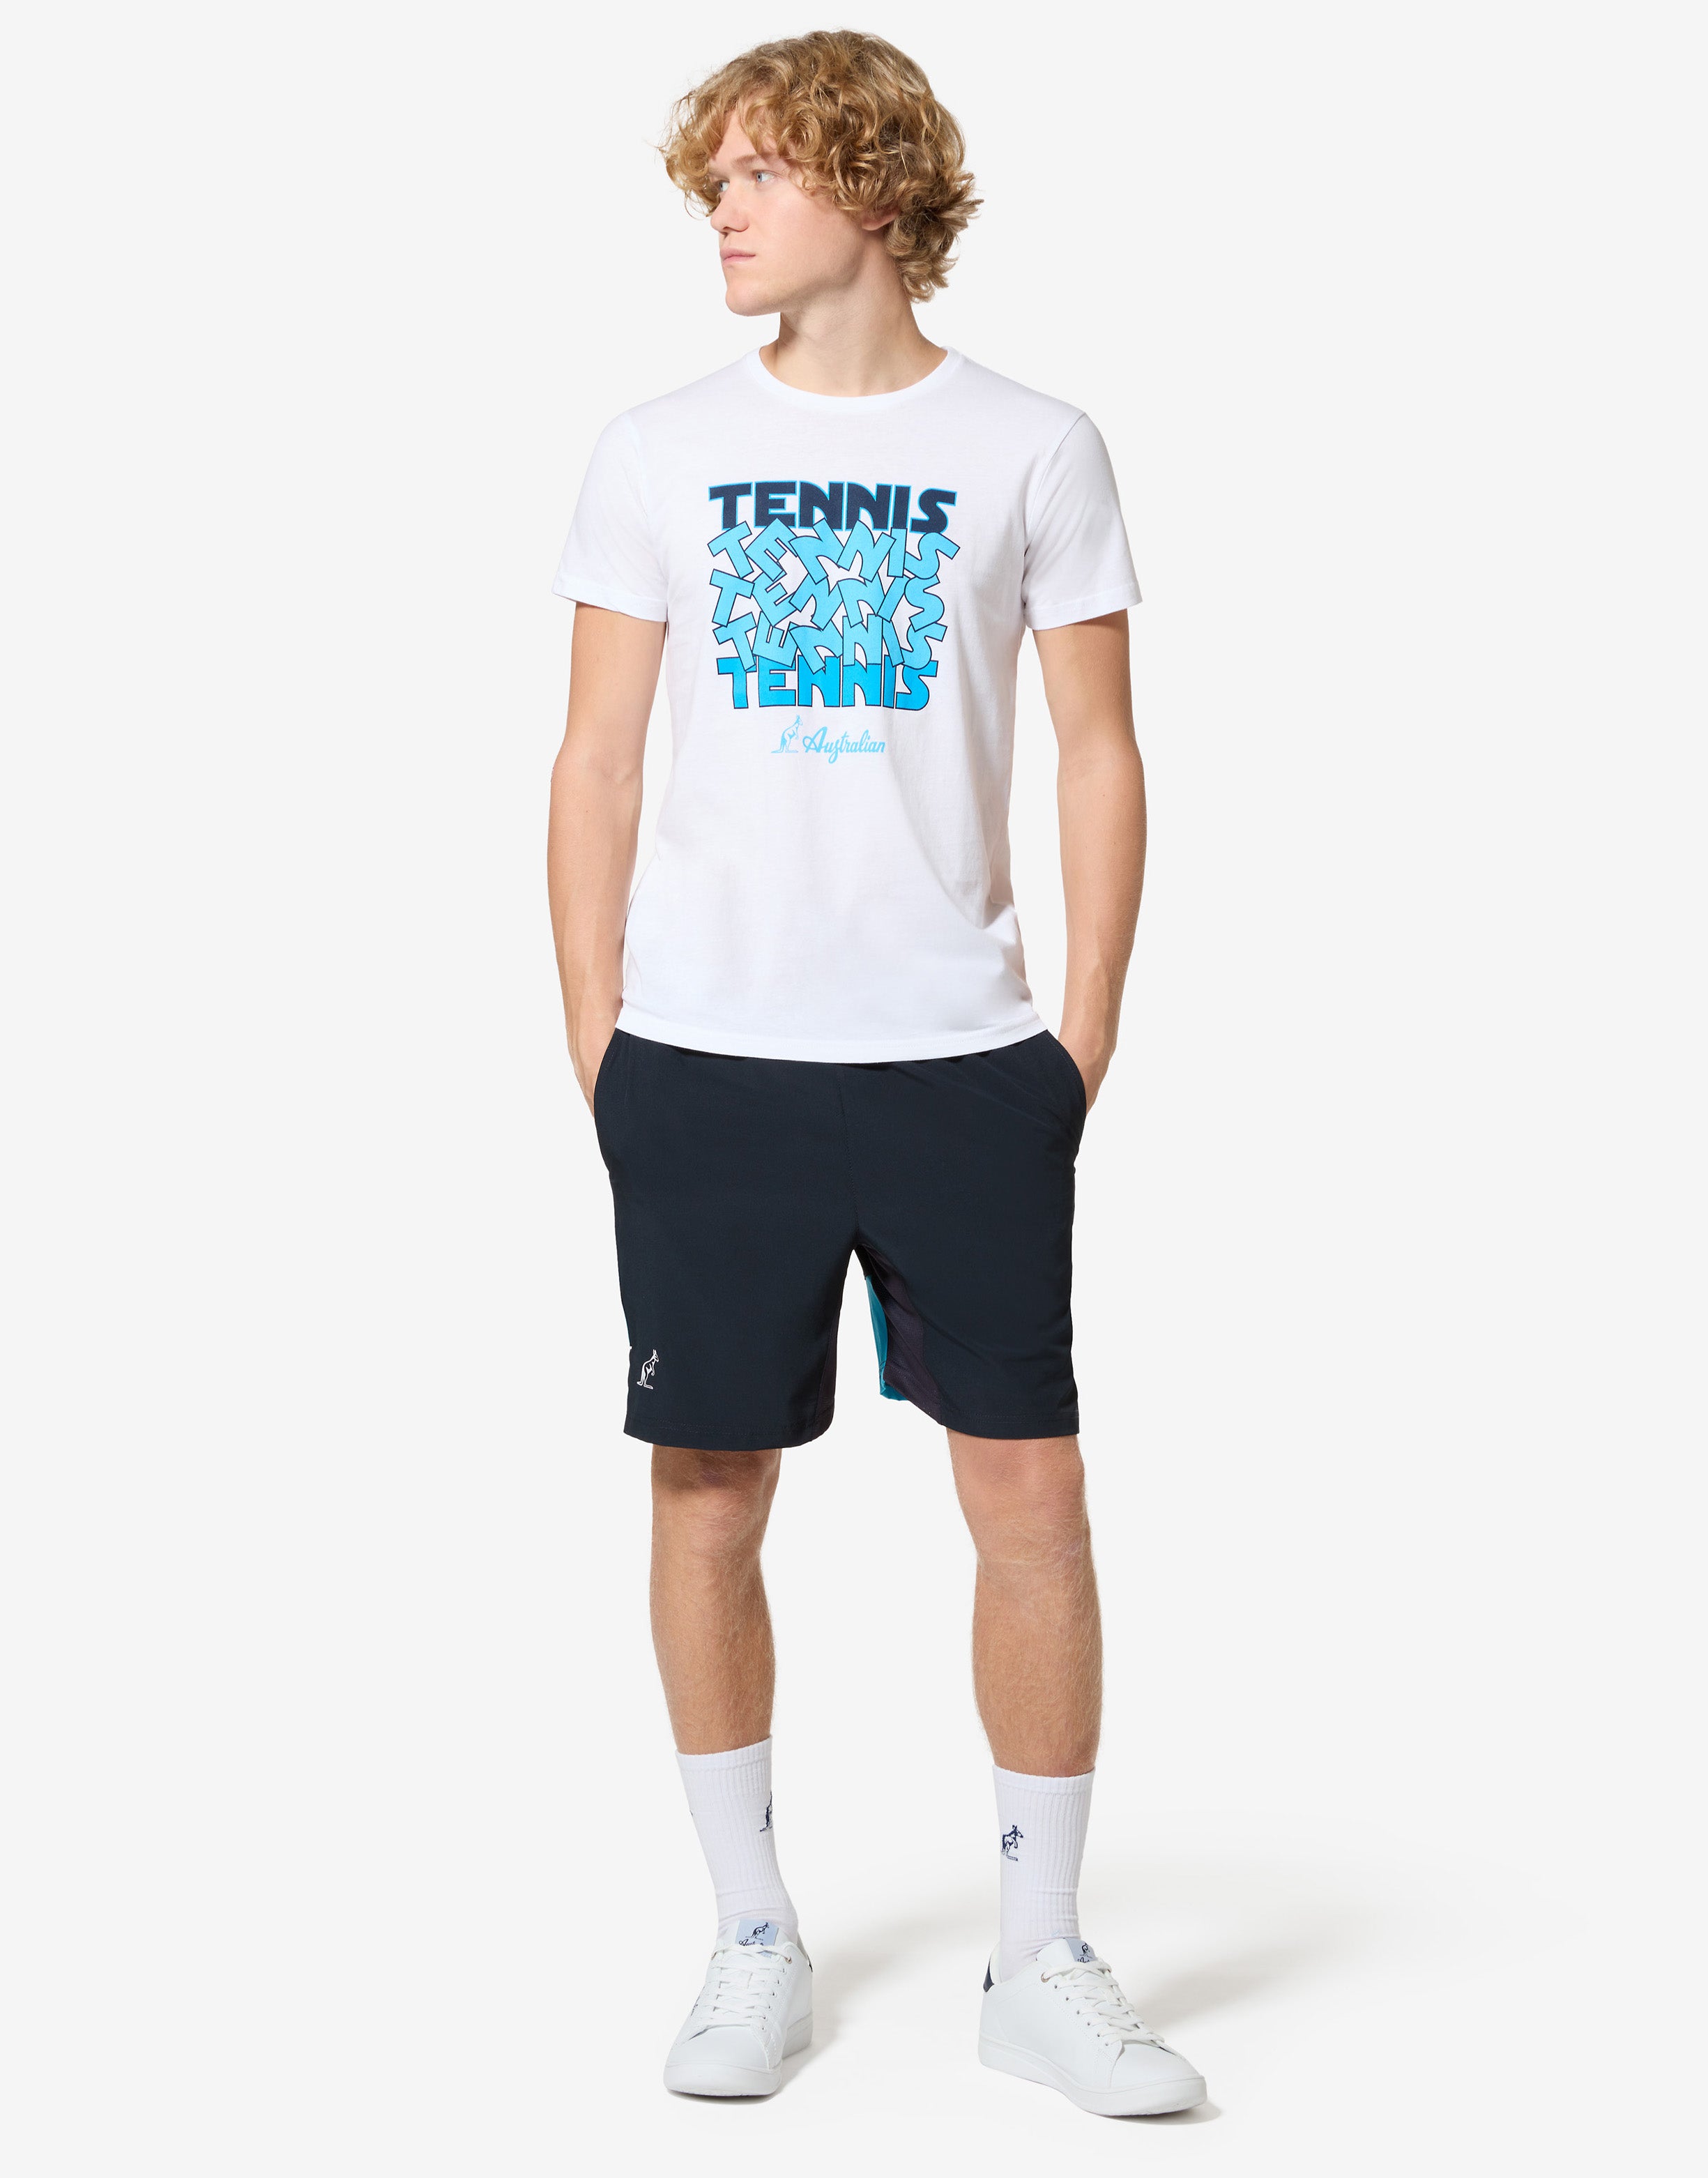 Tennis Cotton T-shirt: Australian Tennis